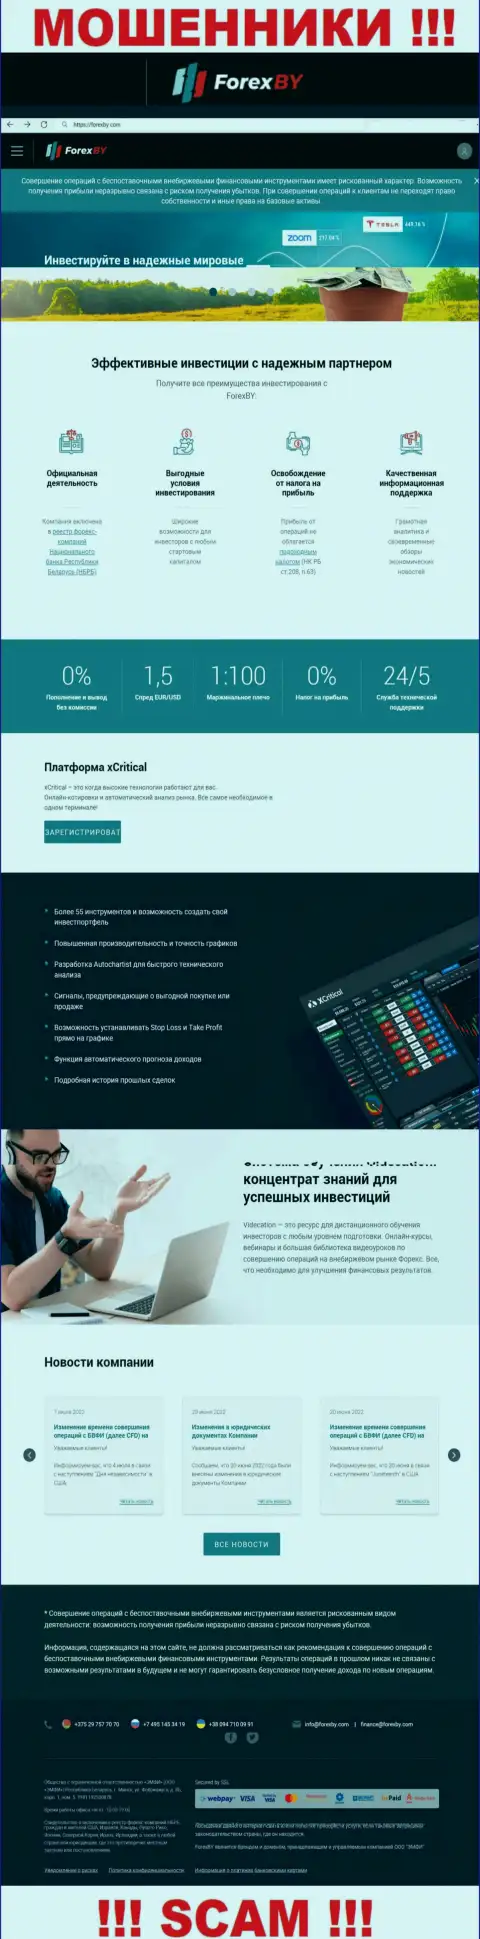 Официальный информационный портал мошенников Forex BY